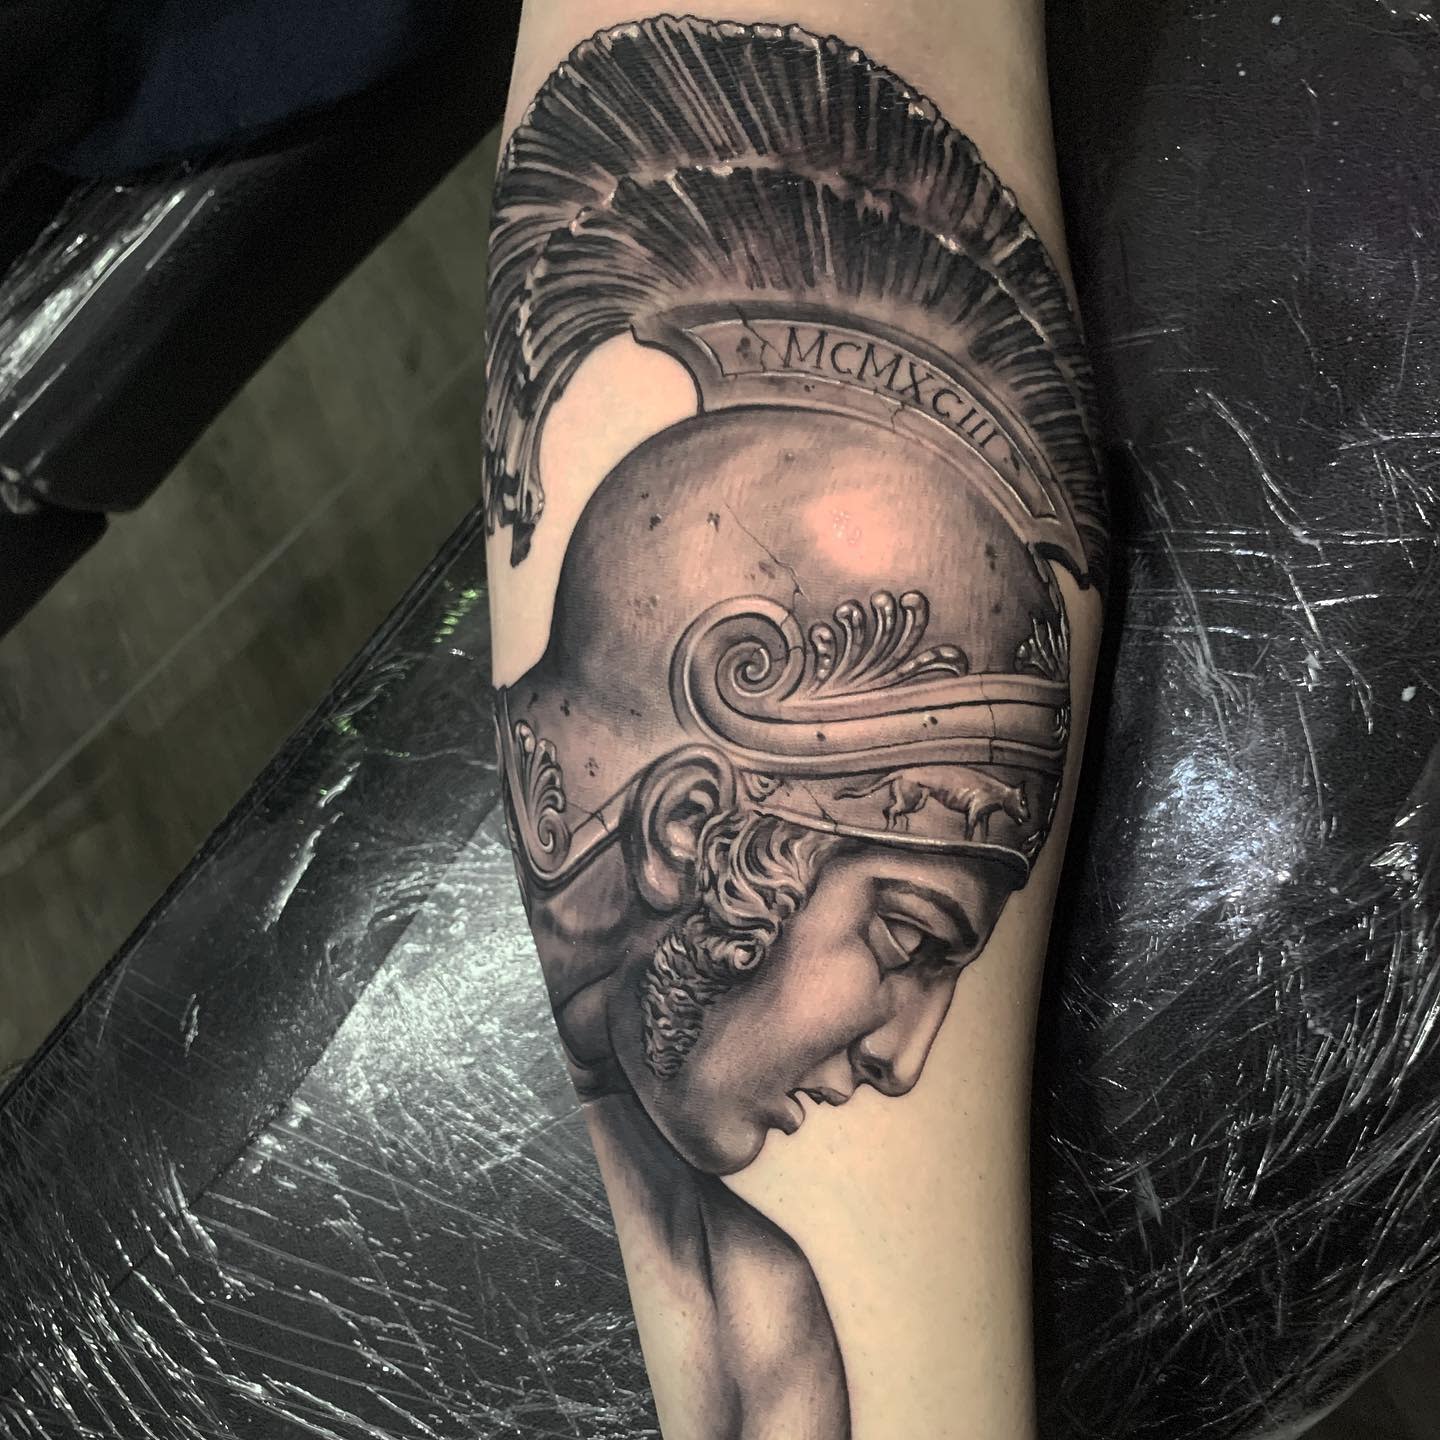 Bills Custom Tattoos  Alexander the Great on inner forearm  blackandgreytattoos sydneytattooartisr billscustomtattoos  Facebook